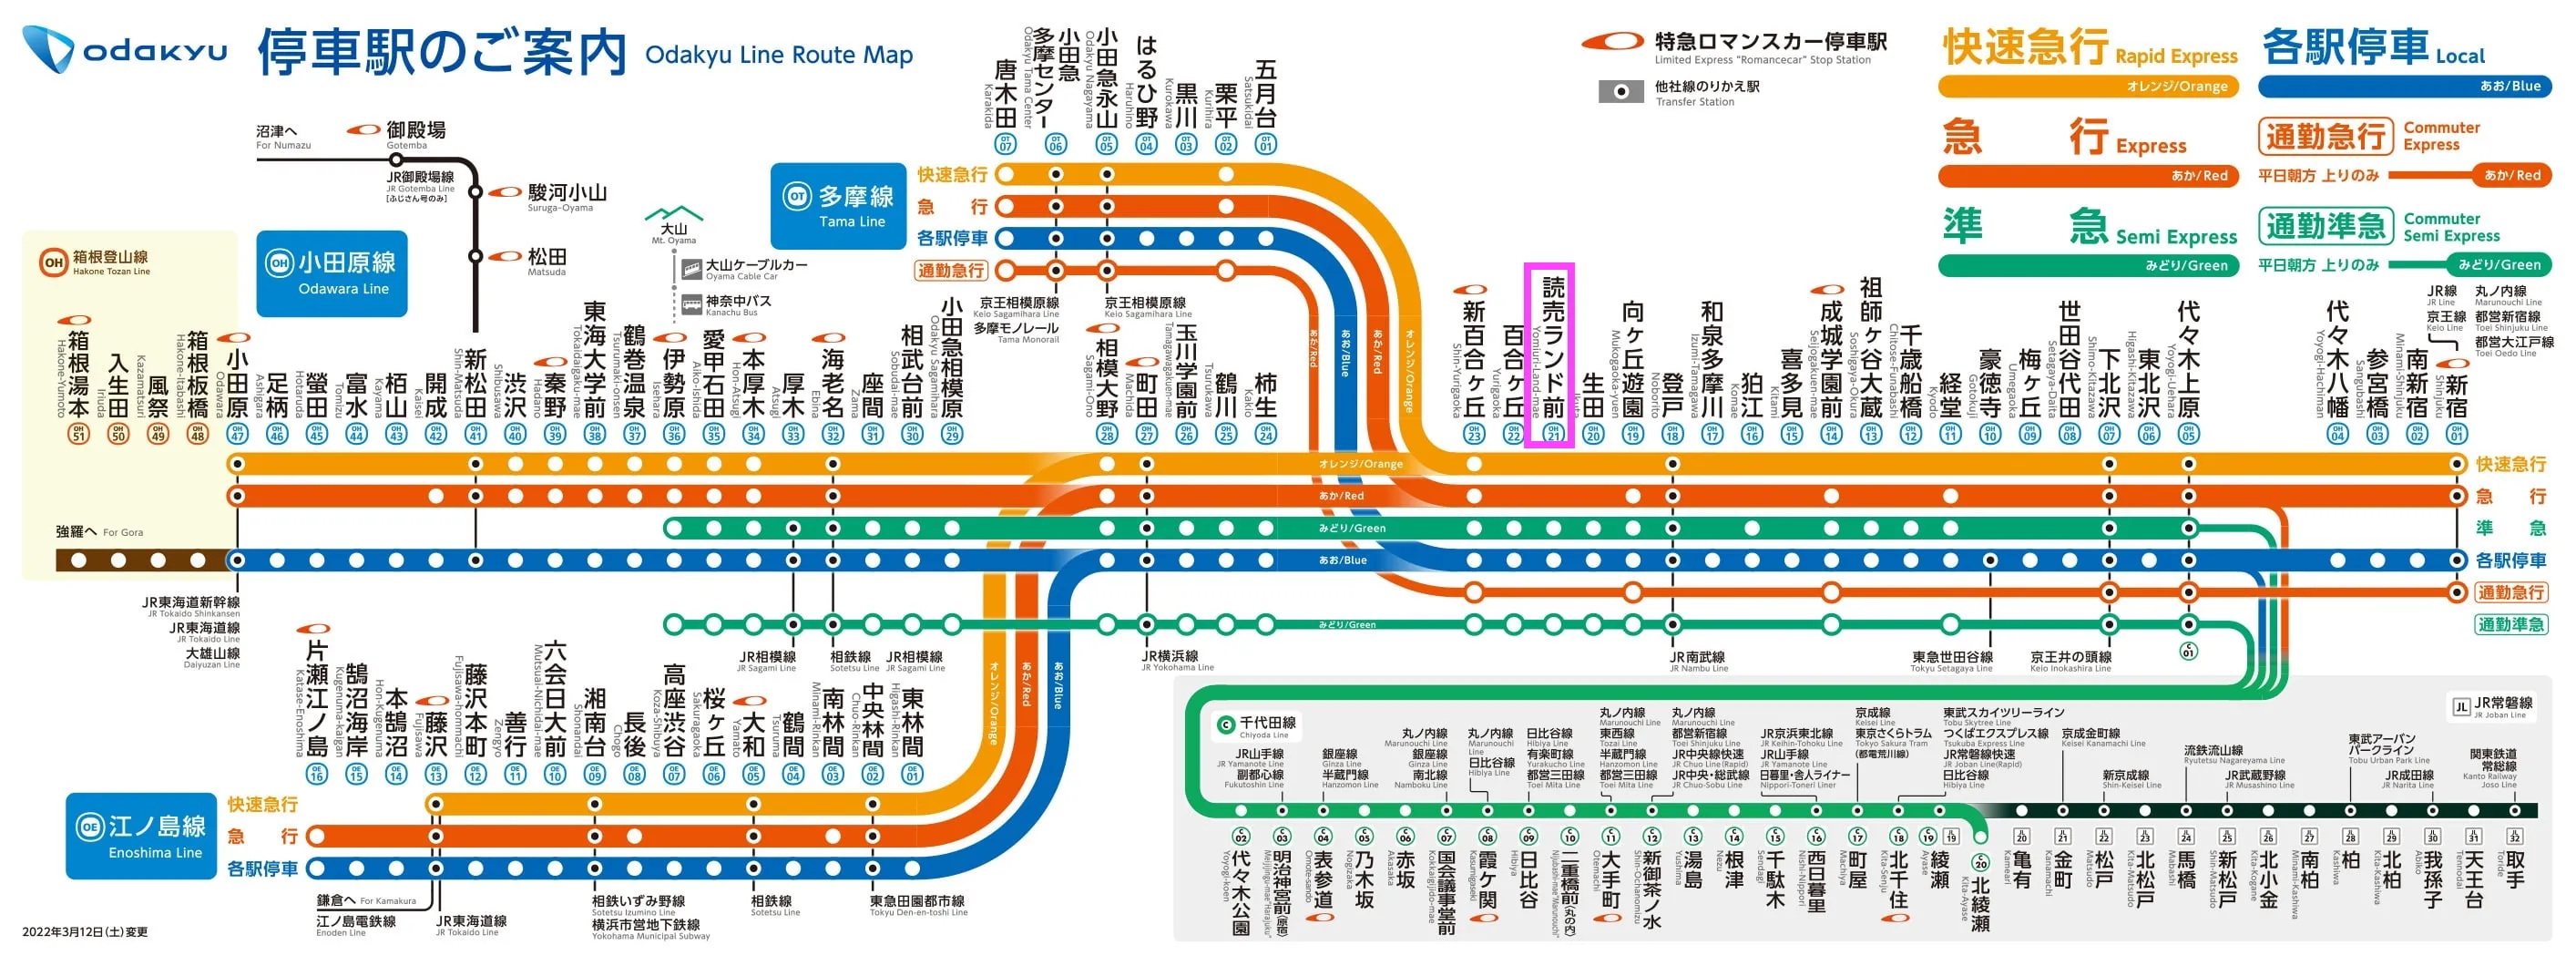 Mapa de ruta de la línea Odakyu Odawara